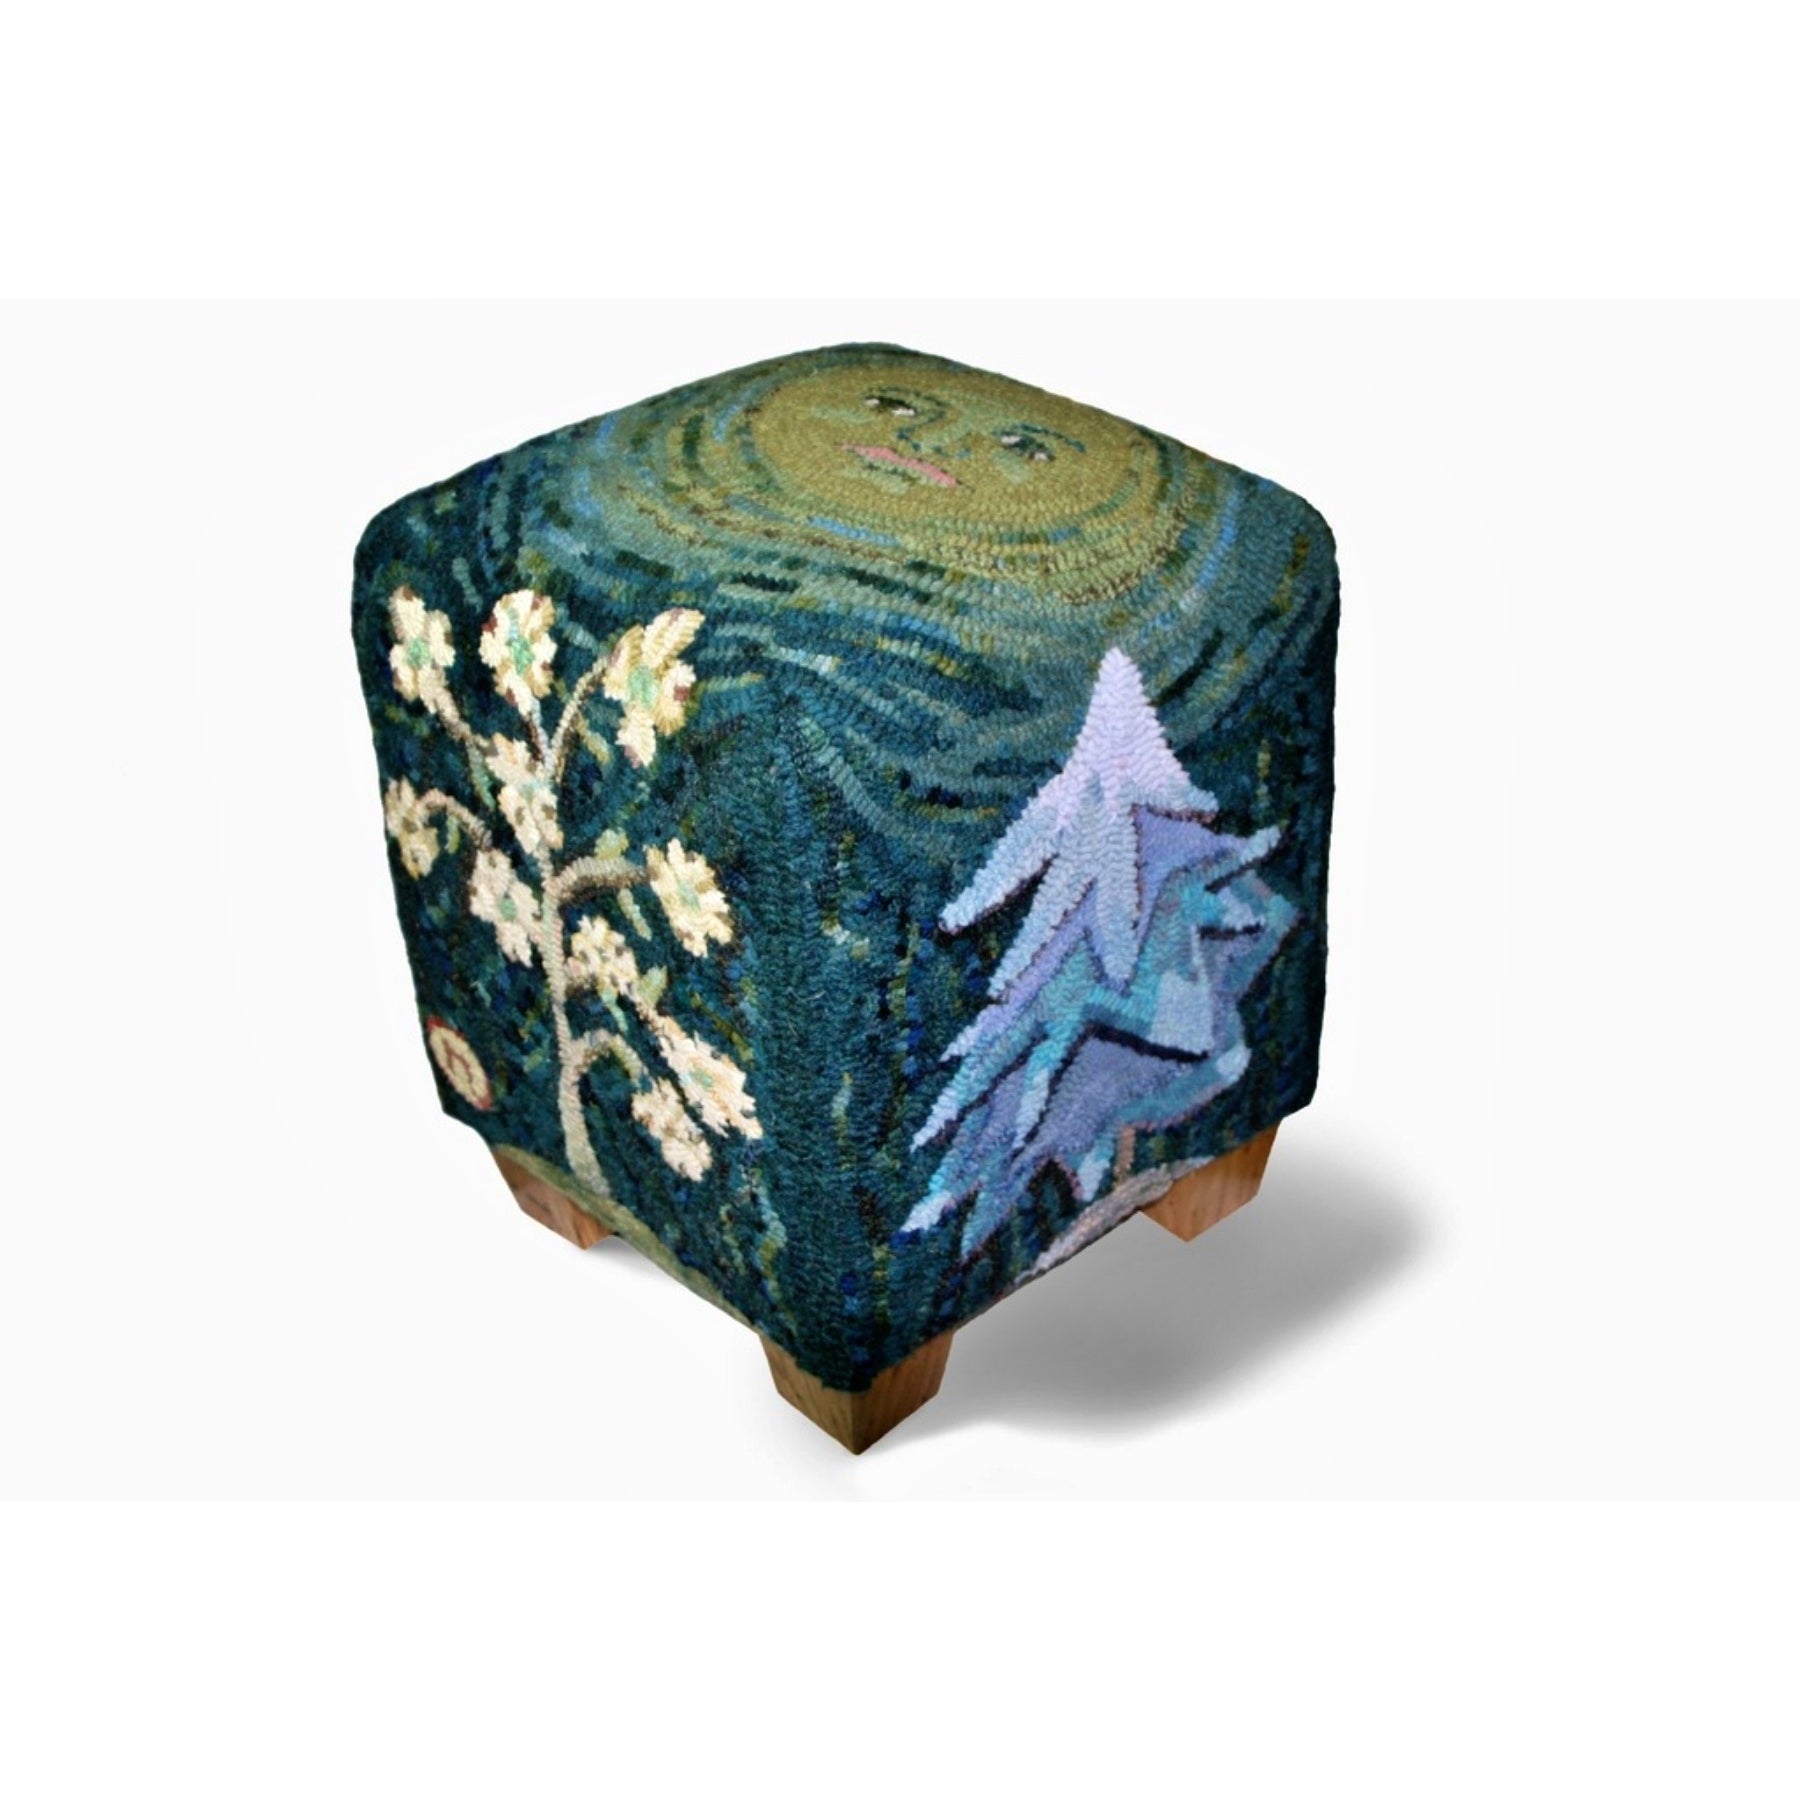 Seasons - Cube Footstool Pattern, rug hooked by Kim Nixon